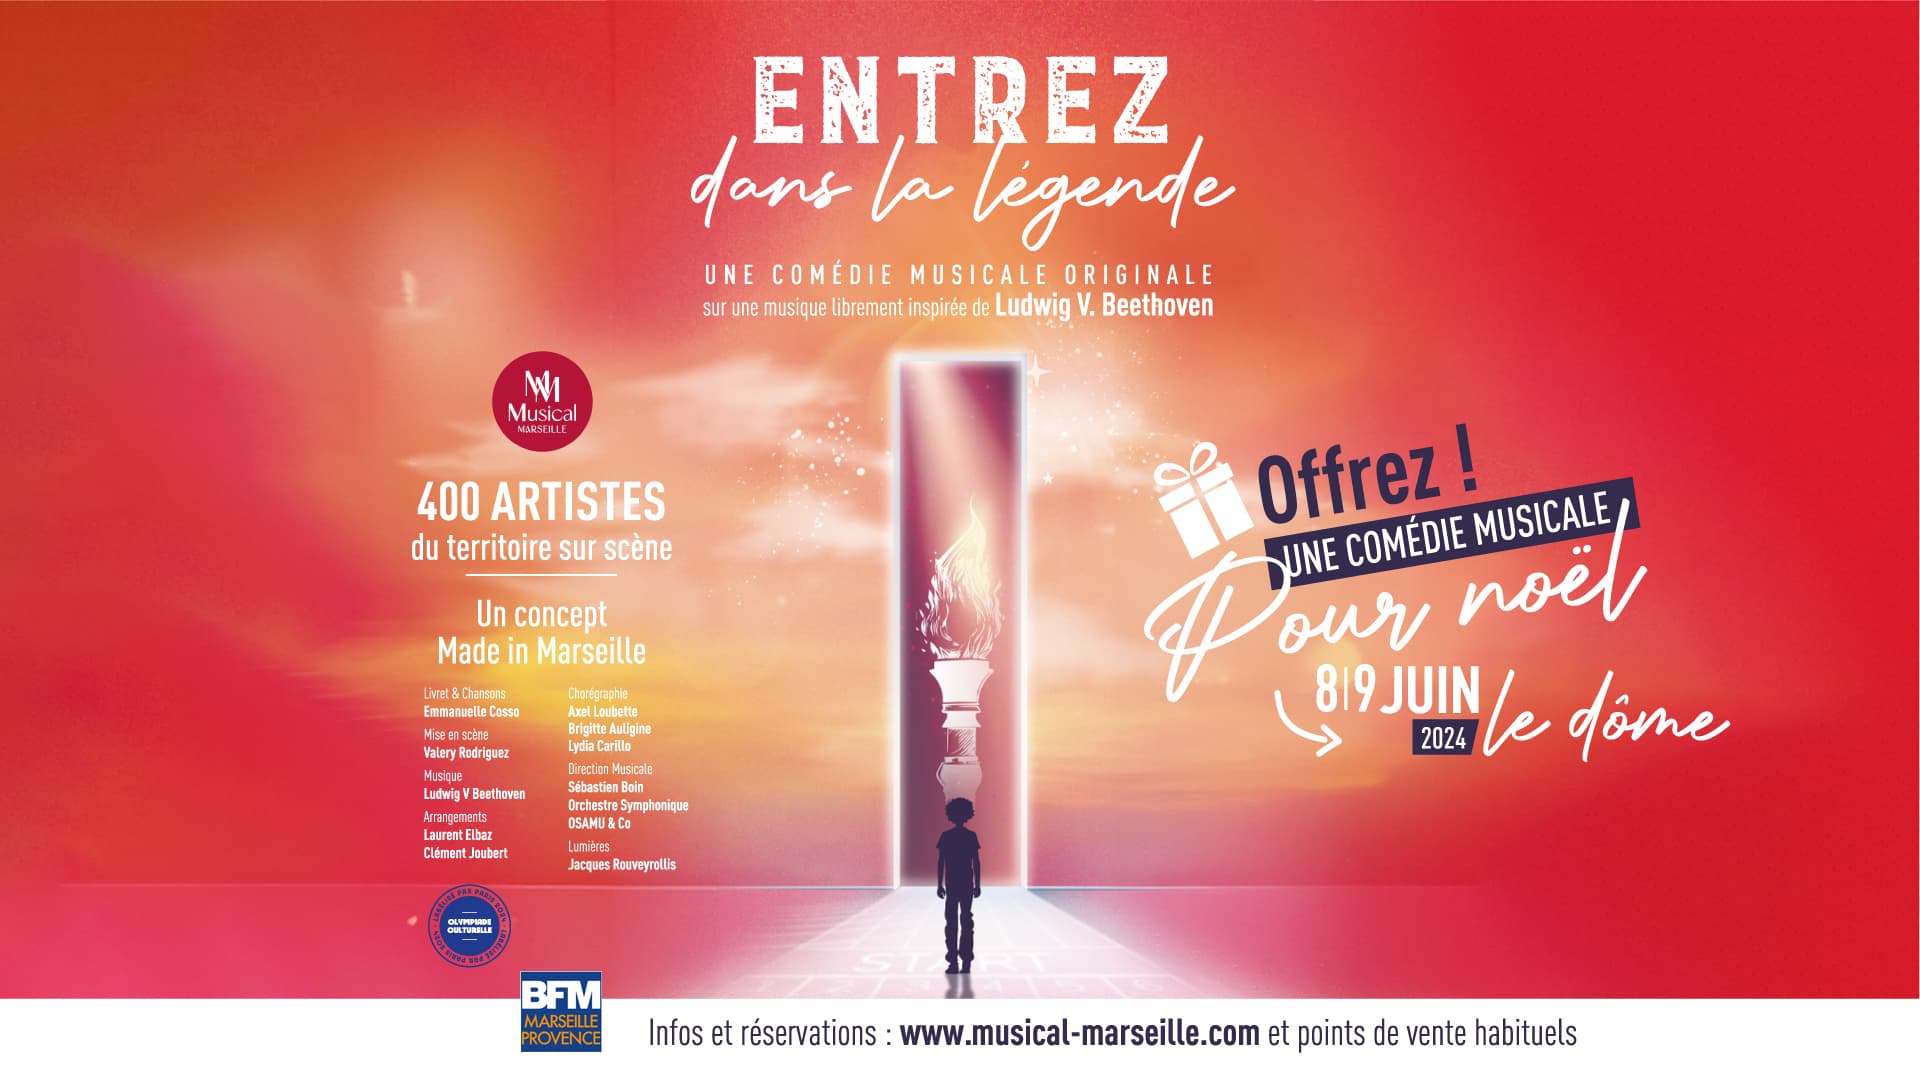 Entrez Dans La Légende - Une Comédie Musicale Originale al Le Dome Tickets